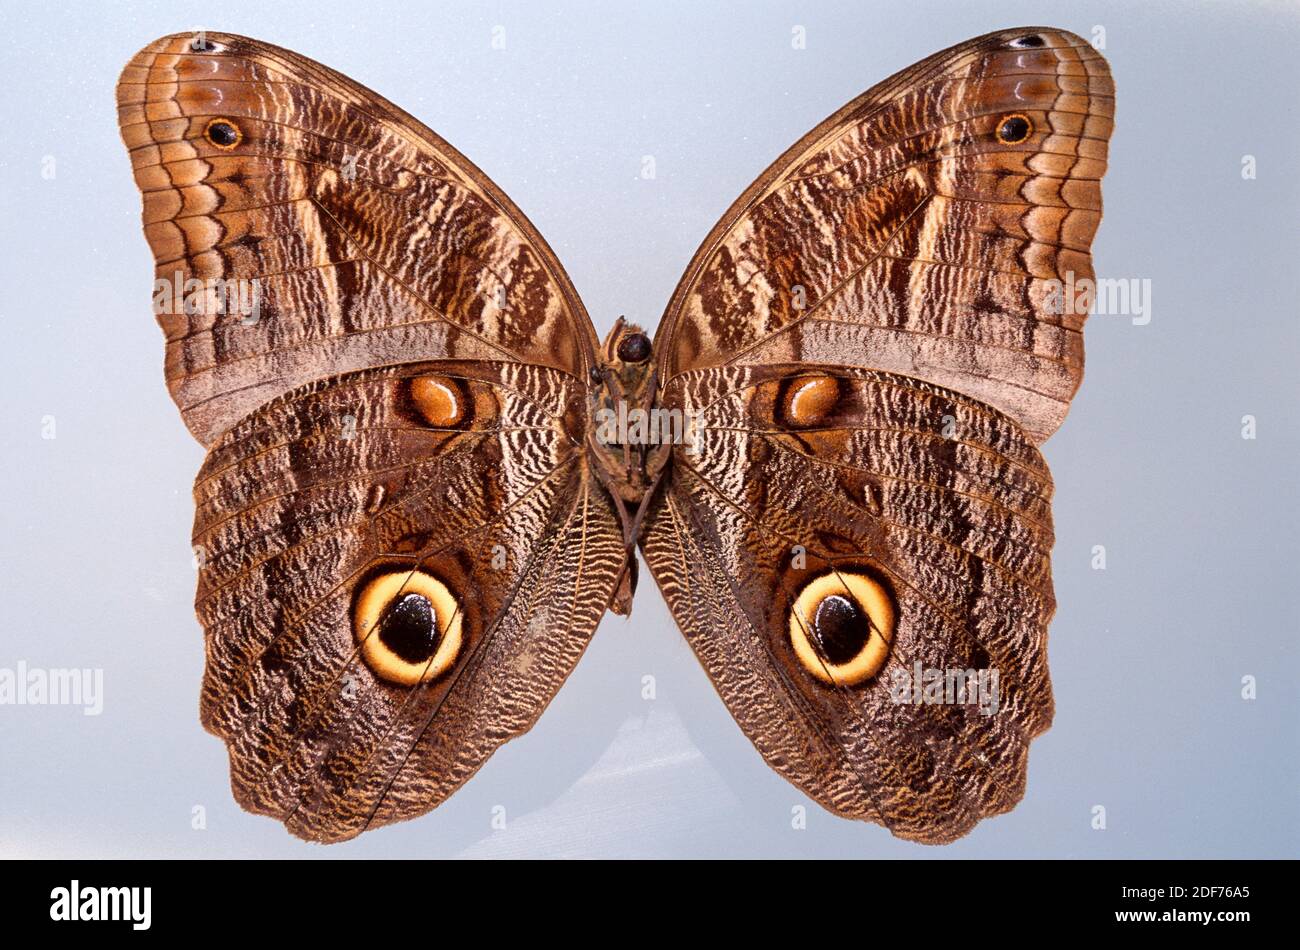 La chouette brésilienne (Caligo brasiliensis) est un papillon originaire de l'Amérique tropicale, du Mexique au Brésil. Banque D'Images